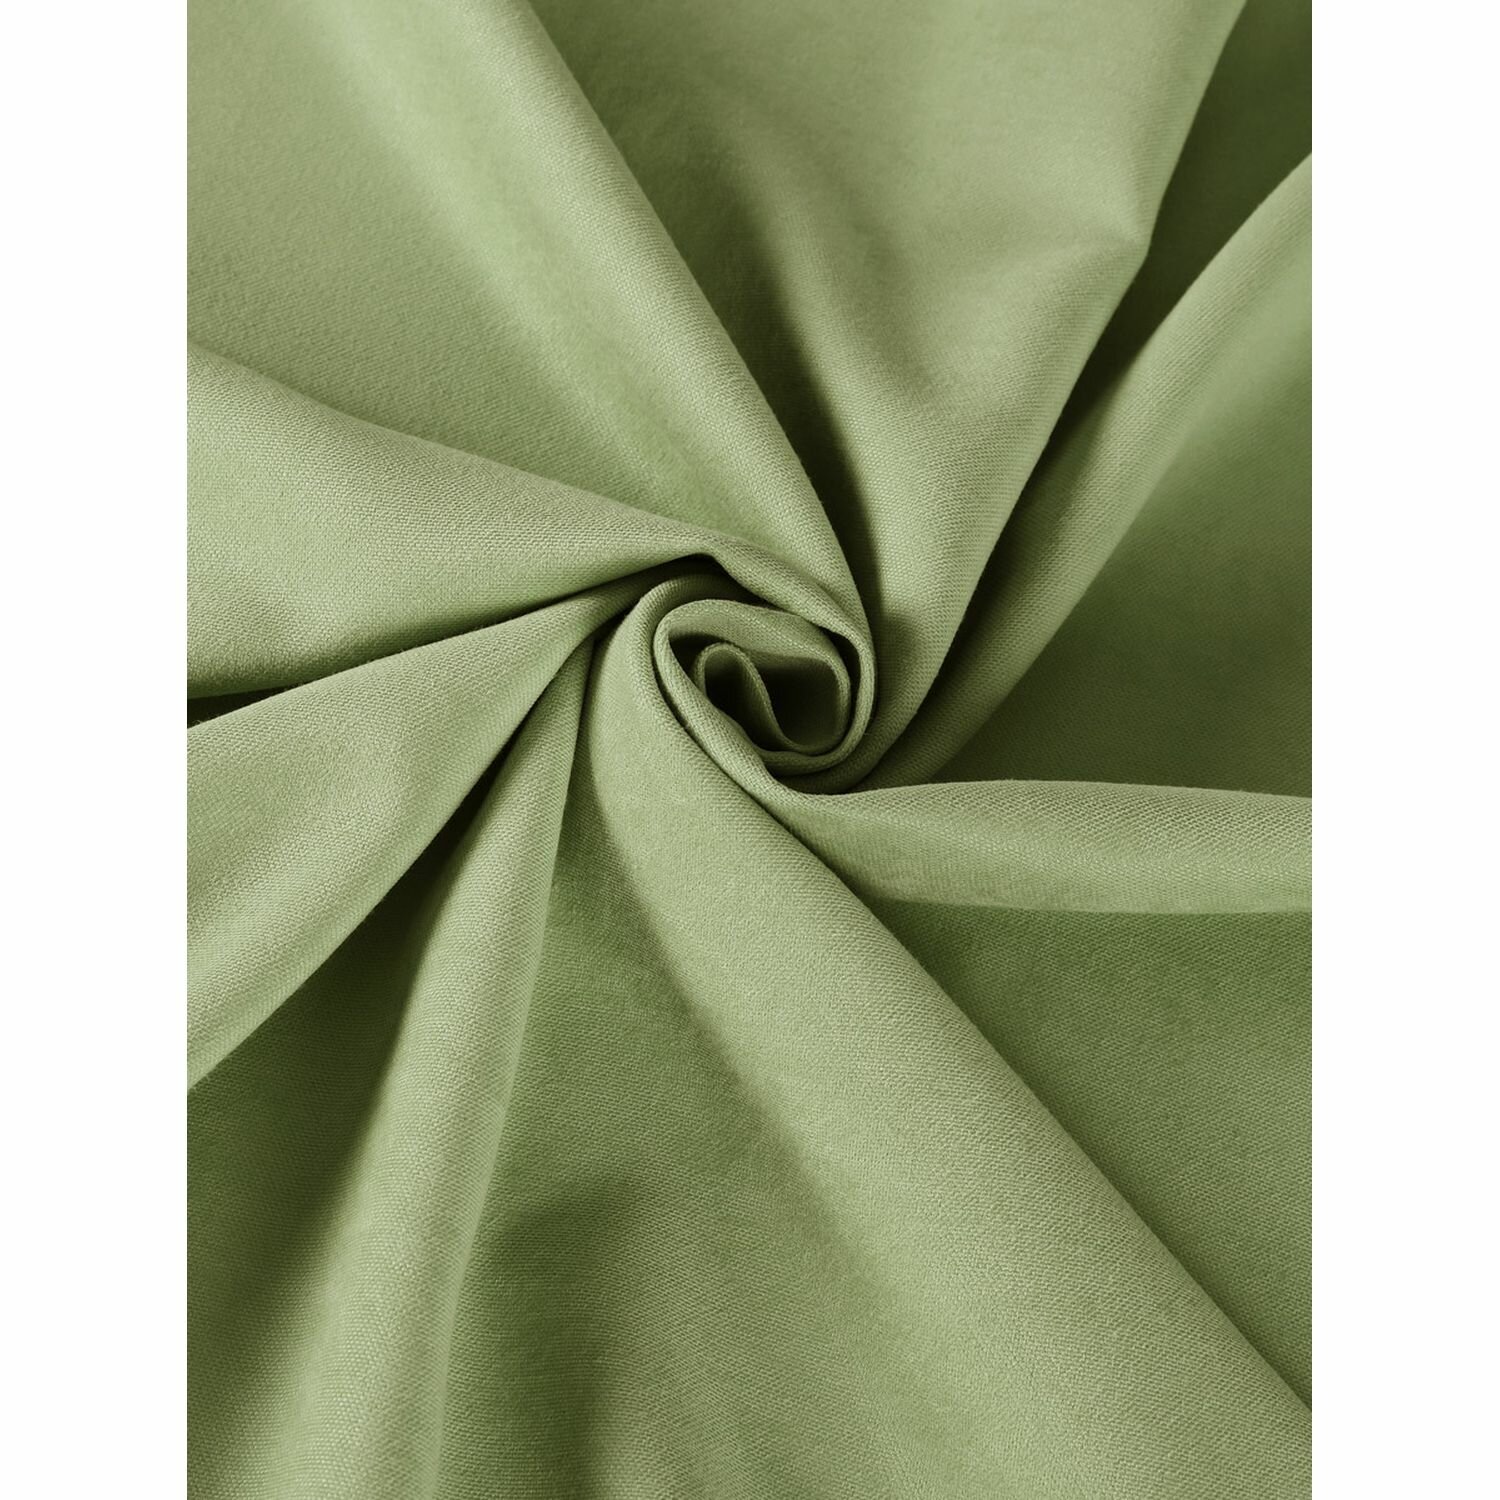 Штора ТД Текстиль Канвас однотон 200х280 см зеленый